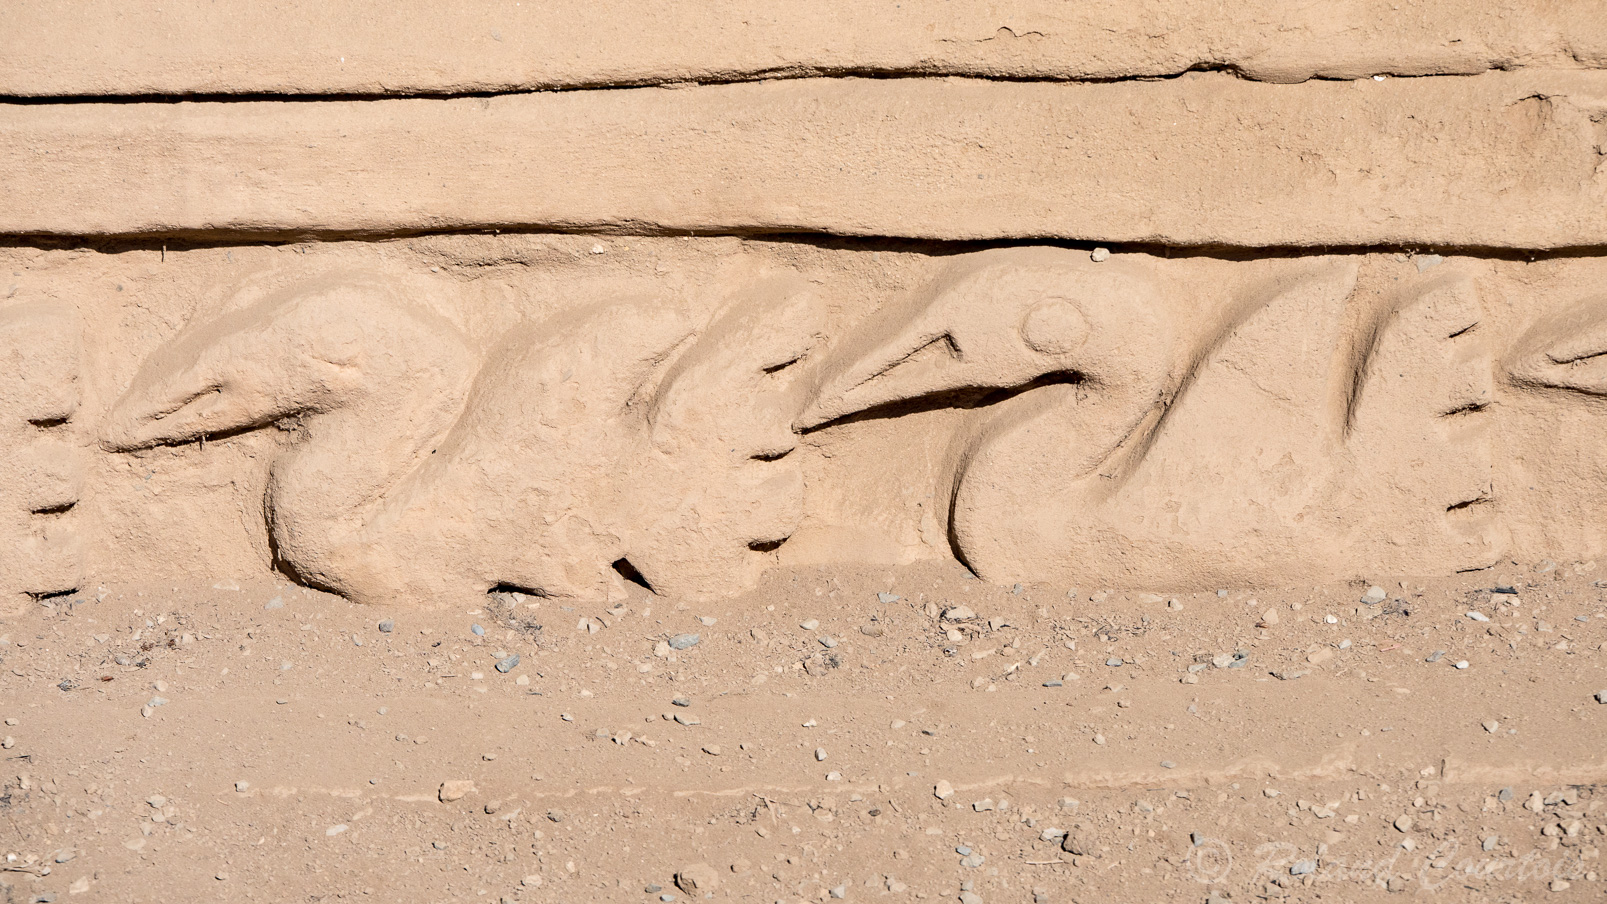 Site archéologique de Chan Chan. Mur en pisé ornés de bas reliefs représentant de petits animaux comme des poissons et autres.